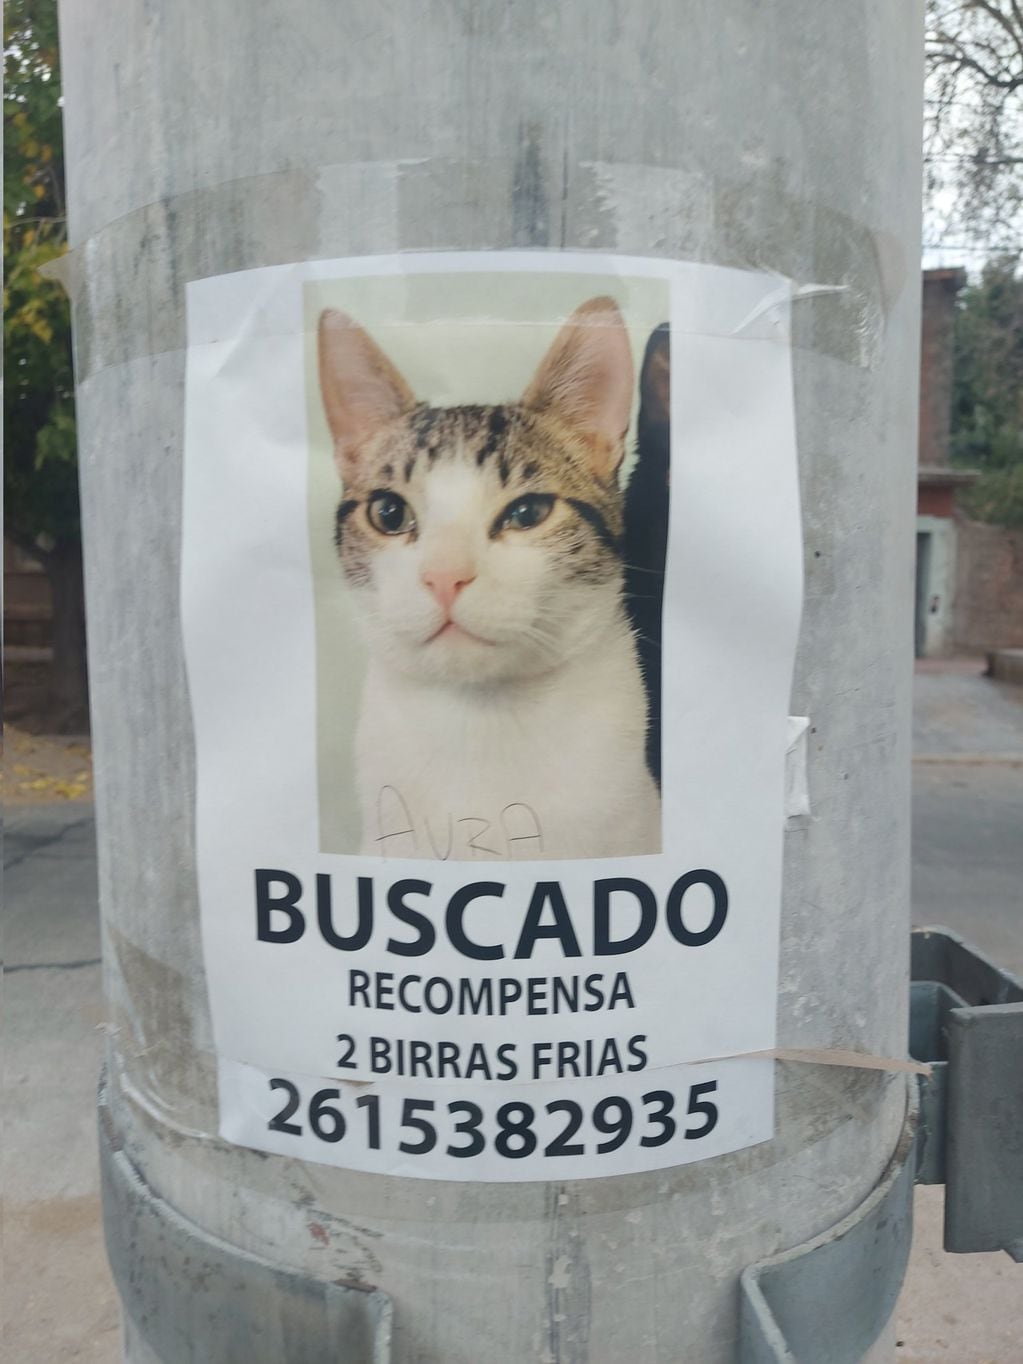 Su mascota lleva un mes perdida en el barrio Bancario, de Godoy Cruz. Un vecino vio la simpática recompensa ofrecida y la compartió en redes sociales.